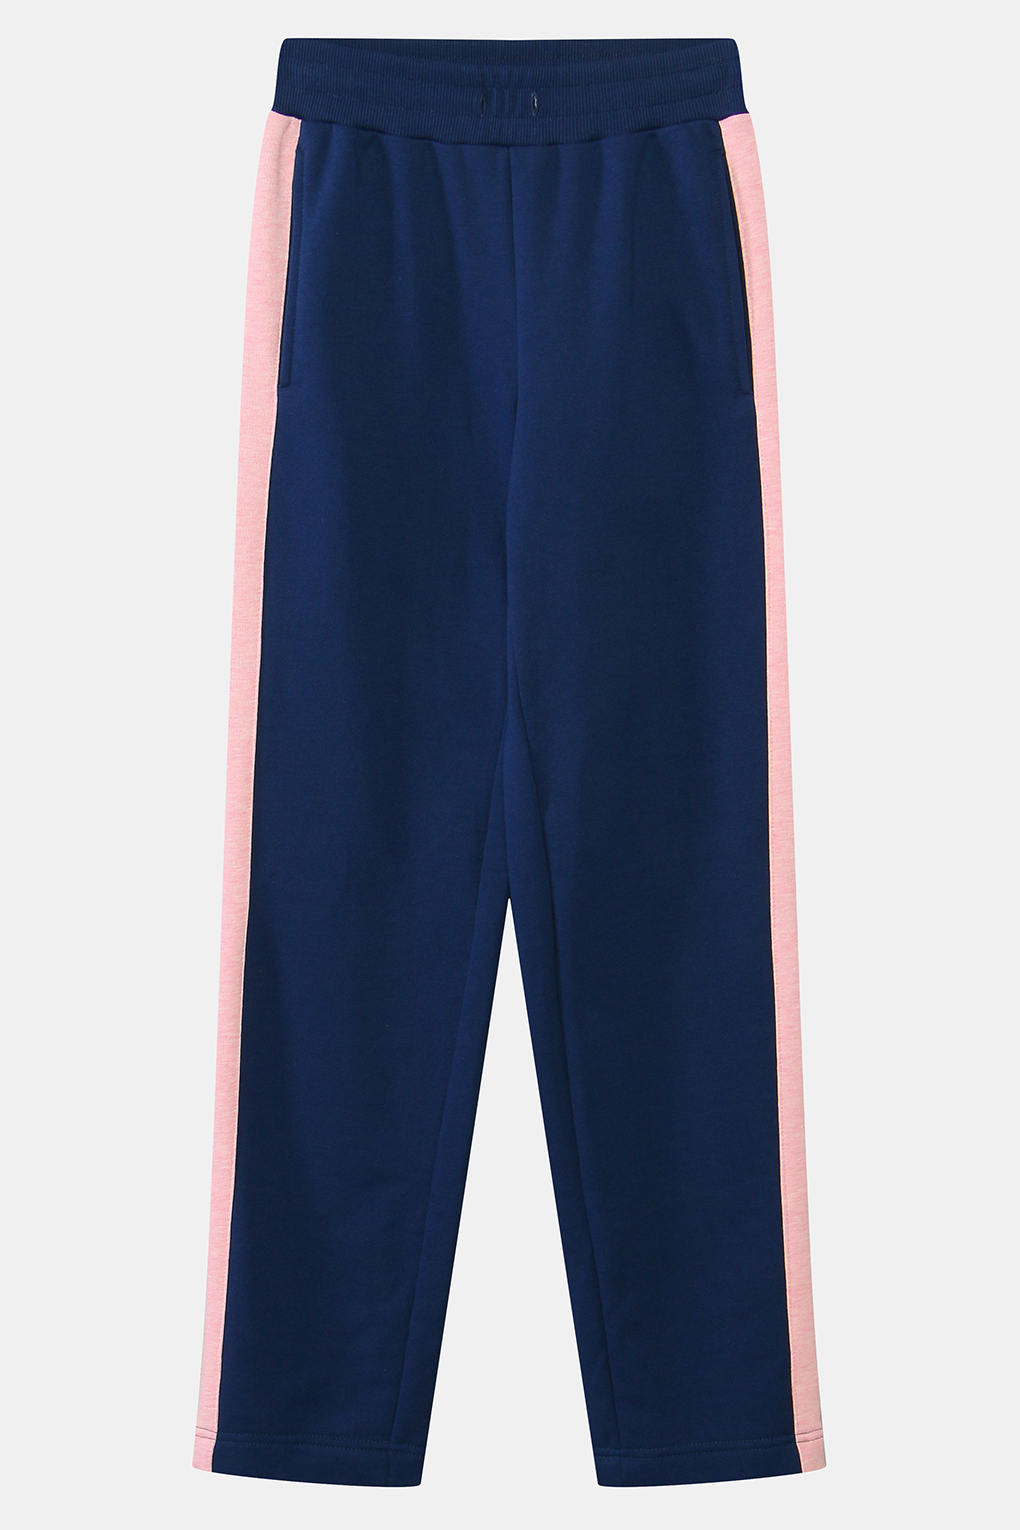 Спортивные брюки женские Belucci BL21042121CD-005 синие S